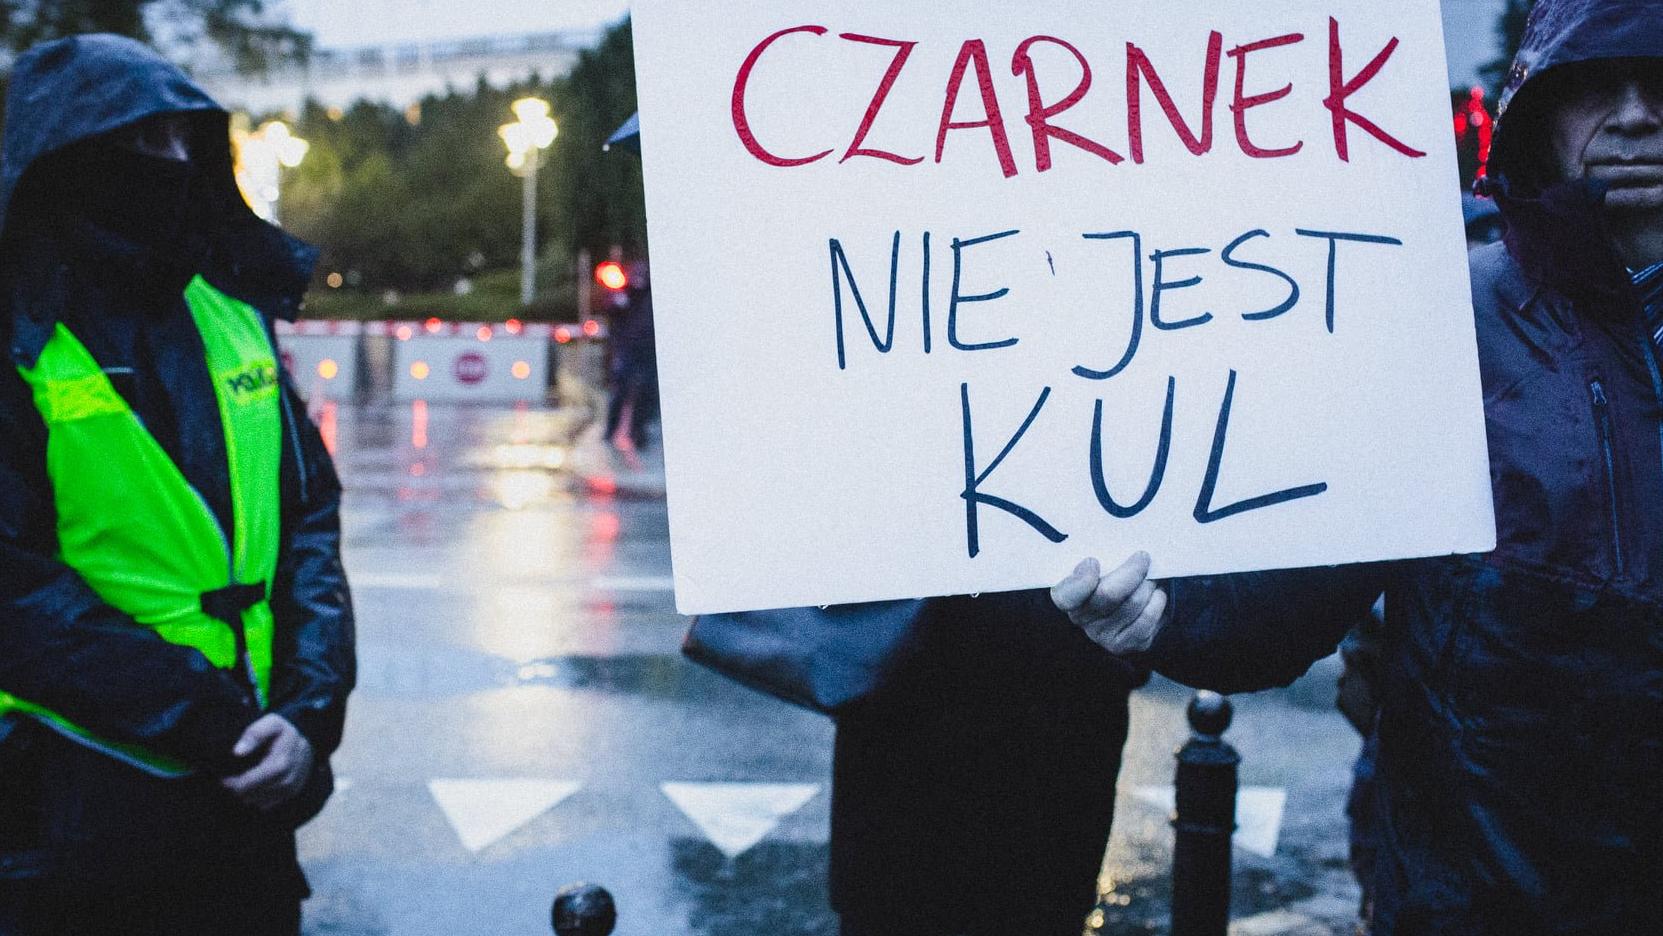 Demonstracja pod Sejme, Plakat z napisem "Czarnek nie jest KUL"